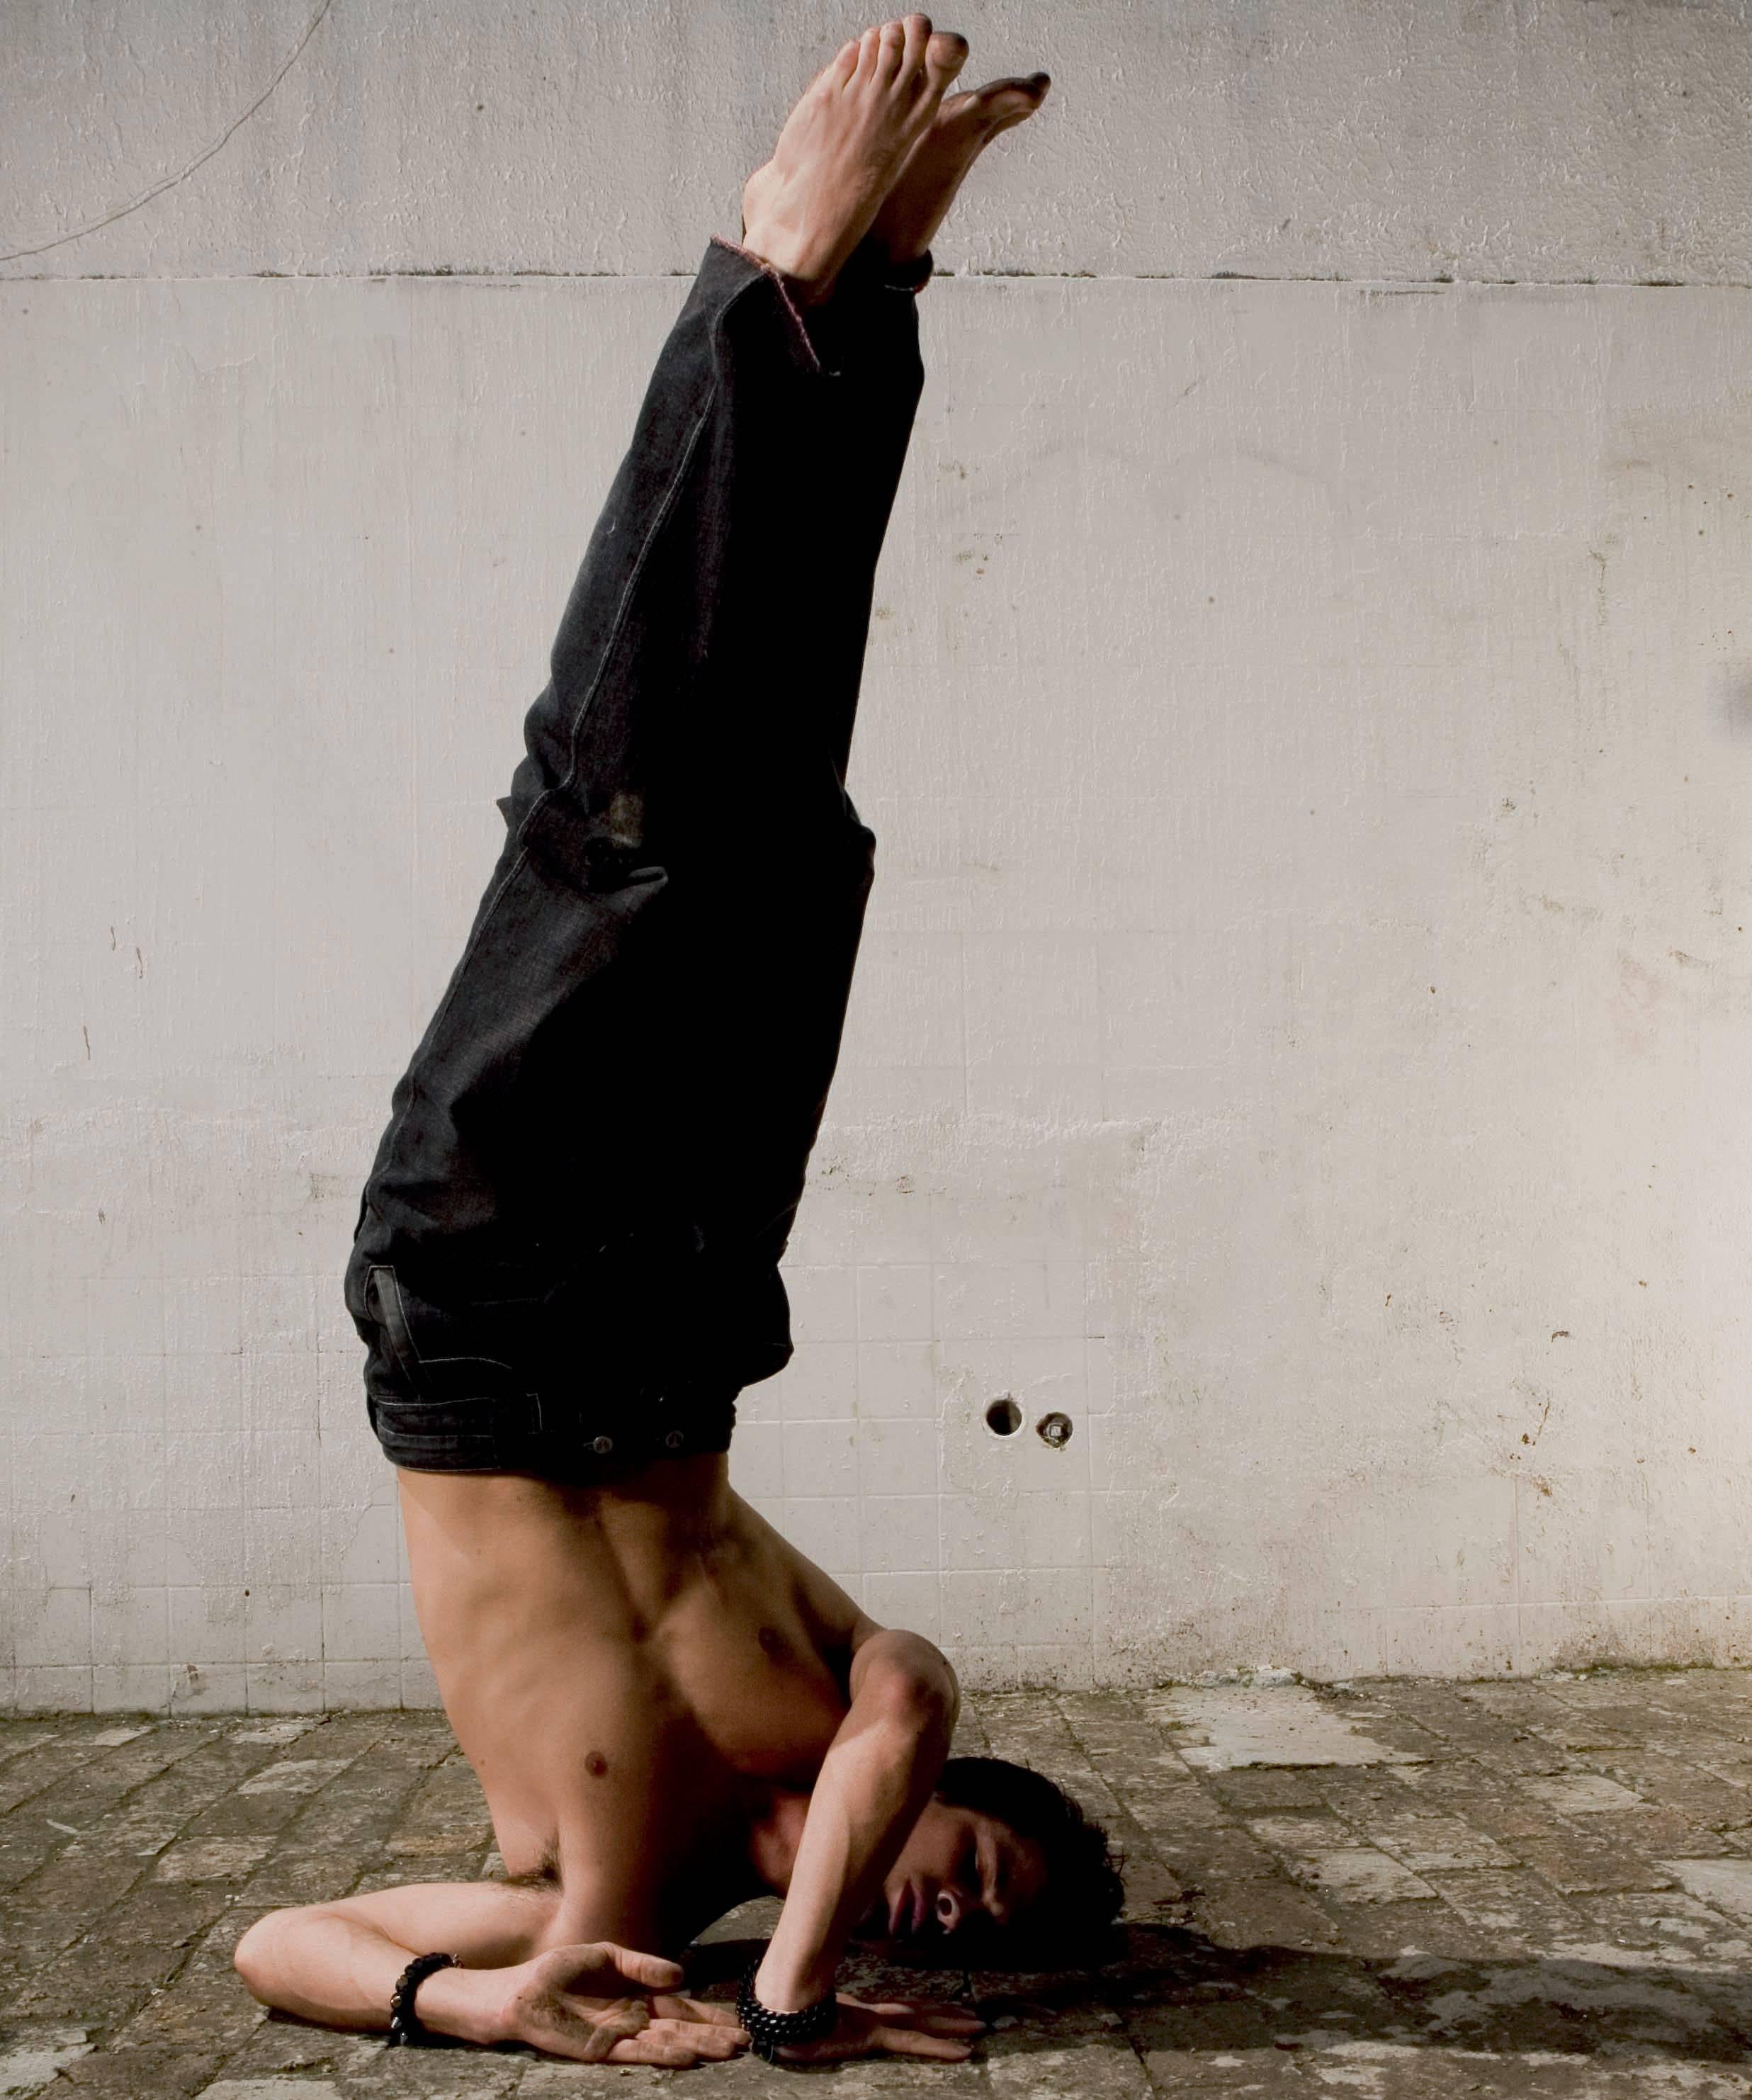 Mauricio Velez Portrait Photograph – Half Angels #23, Yoga-Postur. Farbfotografie in limitierter Auflage